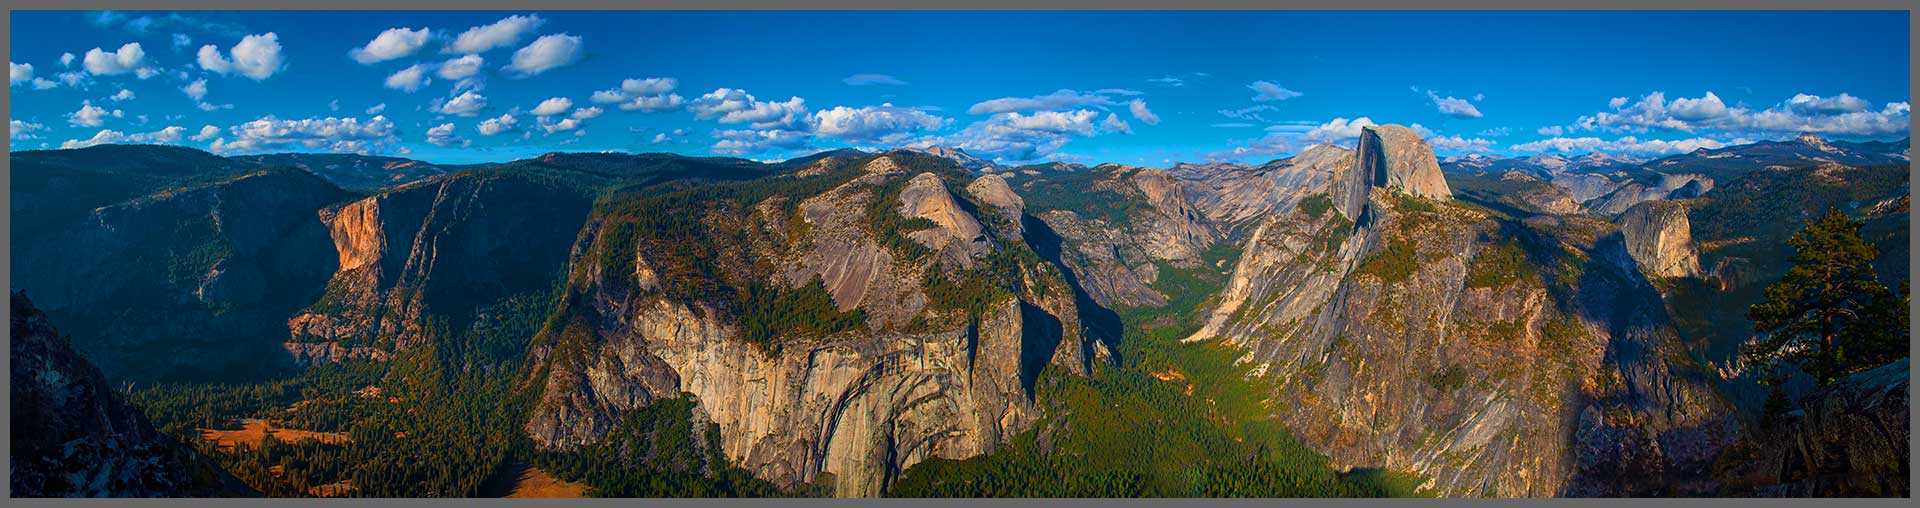 Yosemite Park Panorama